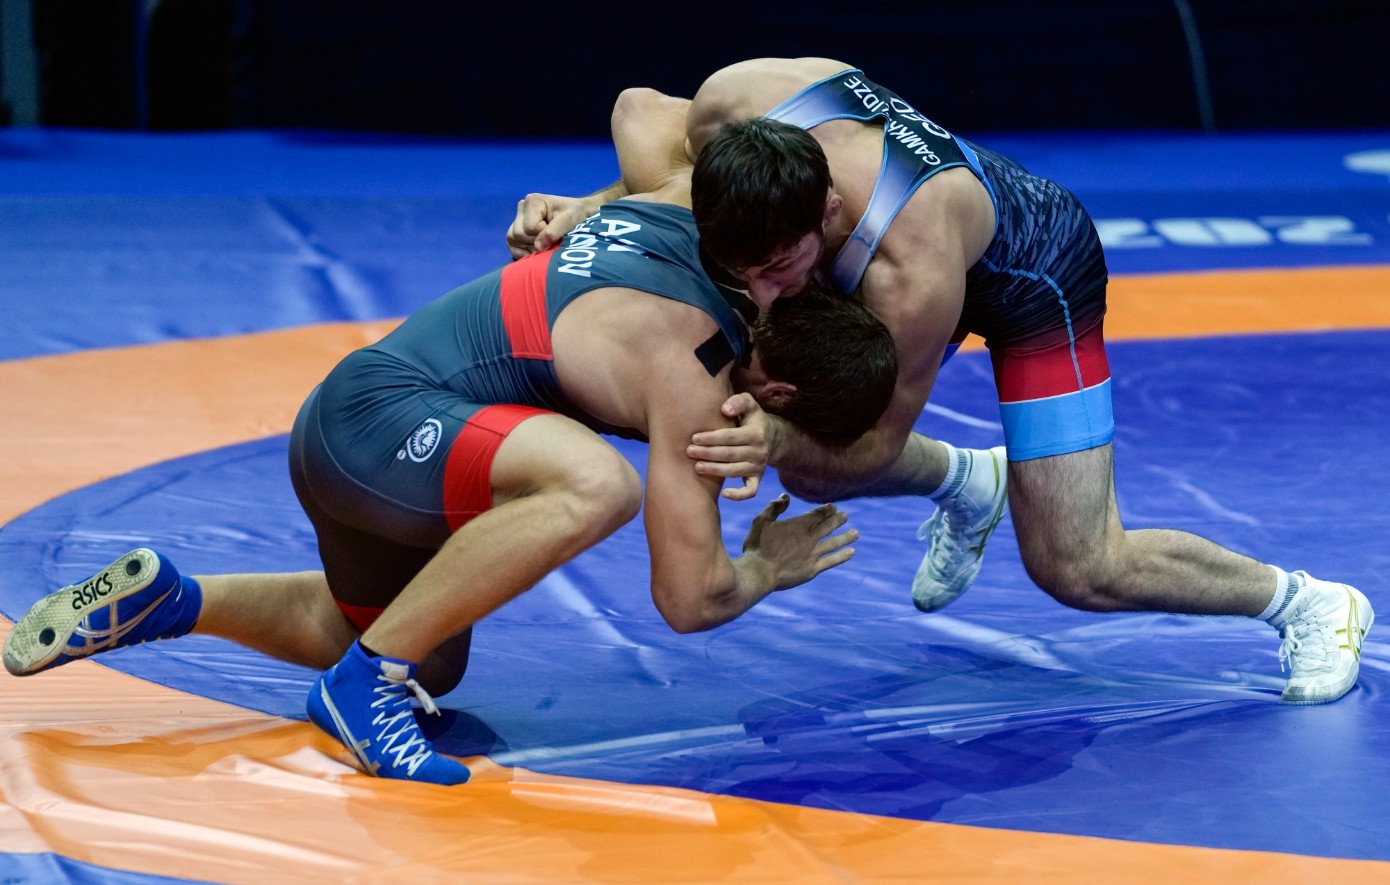 Ολυμπιακοί Αγώνες: Μποϊκοτάζ από τη Ρωσία στην πάλη, αρνήθηκε 10 προσκλήσεις αθλητών